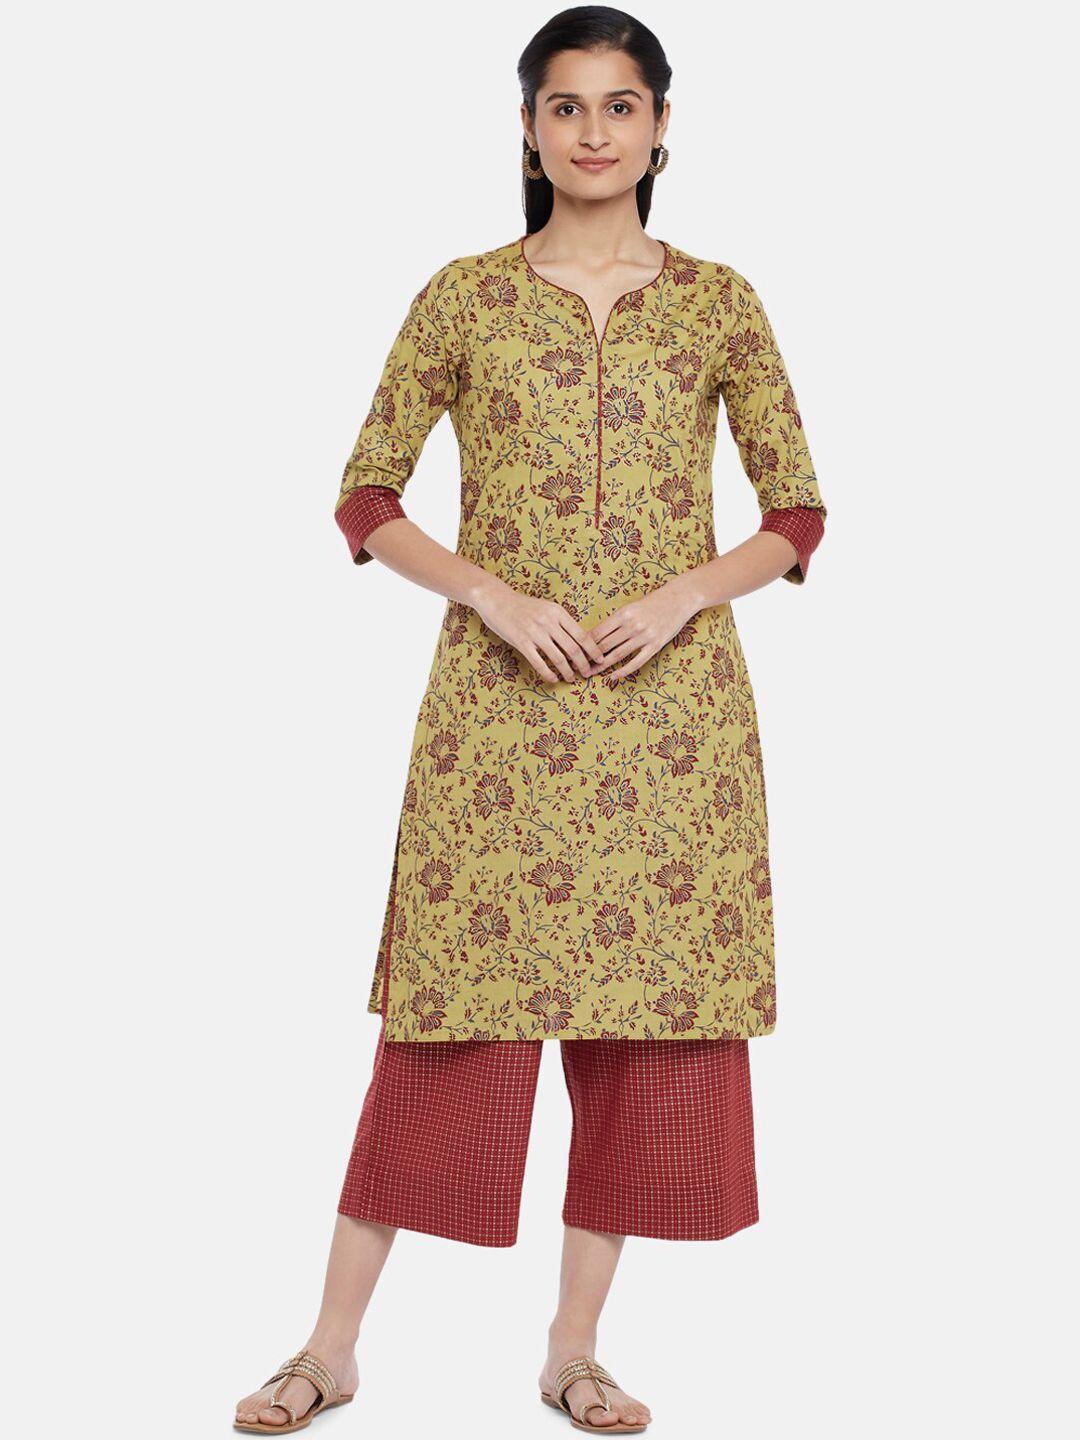 rangmanch-by-pantaloons-women-mustard-yellow-pure-cotton-kurta-set